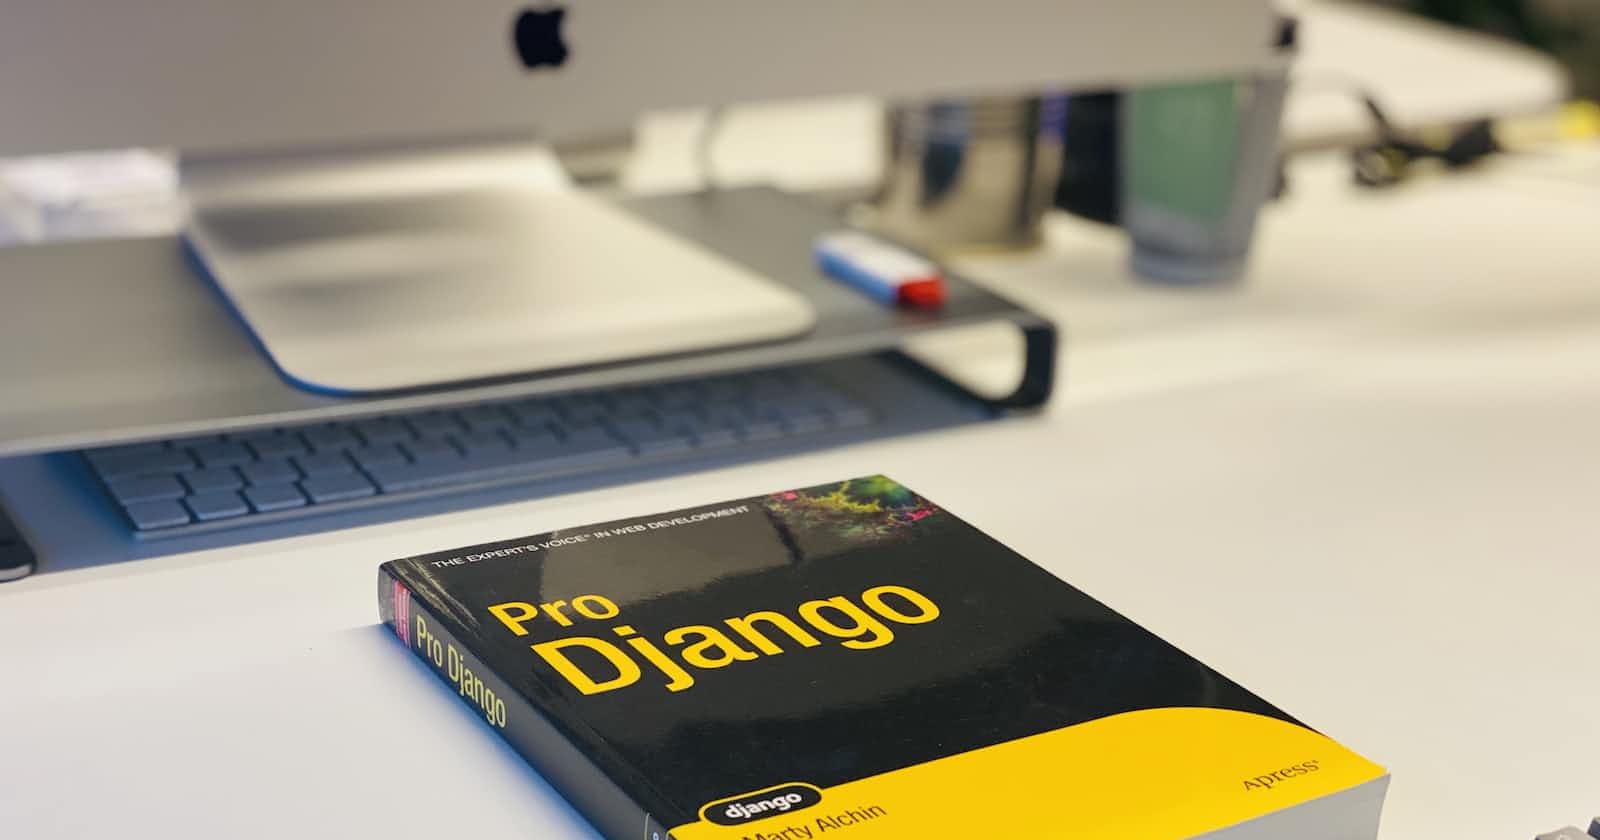 Understanding Django Models and migrations